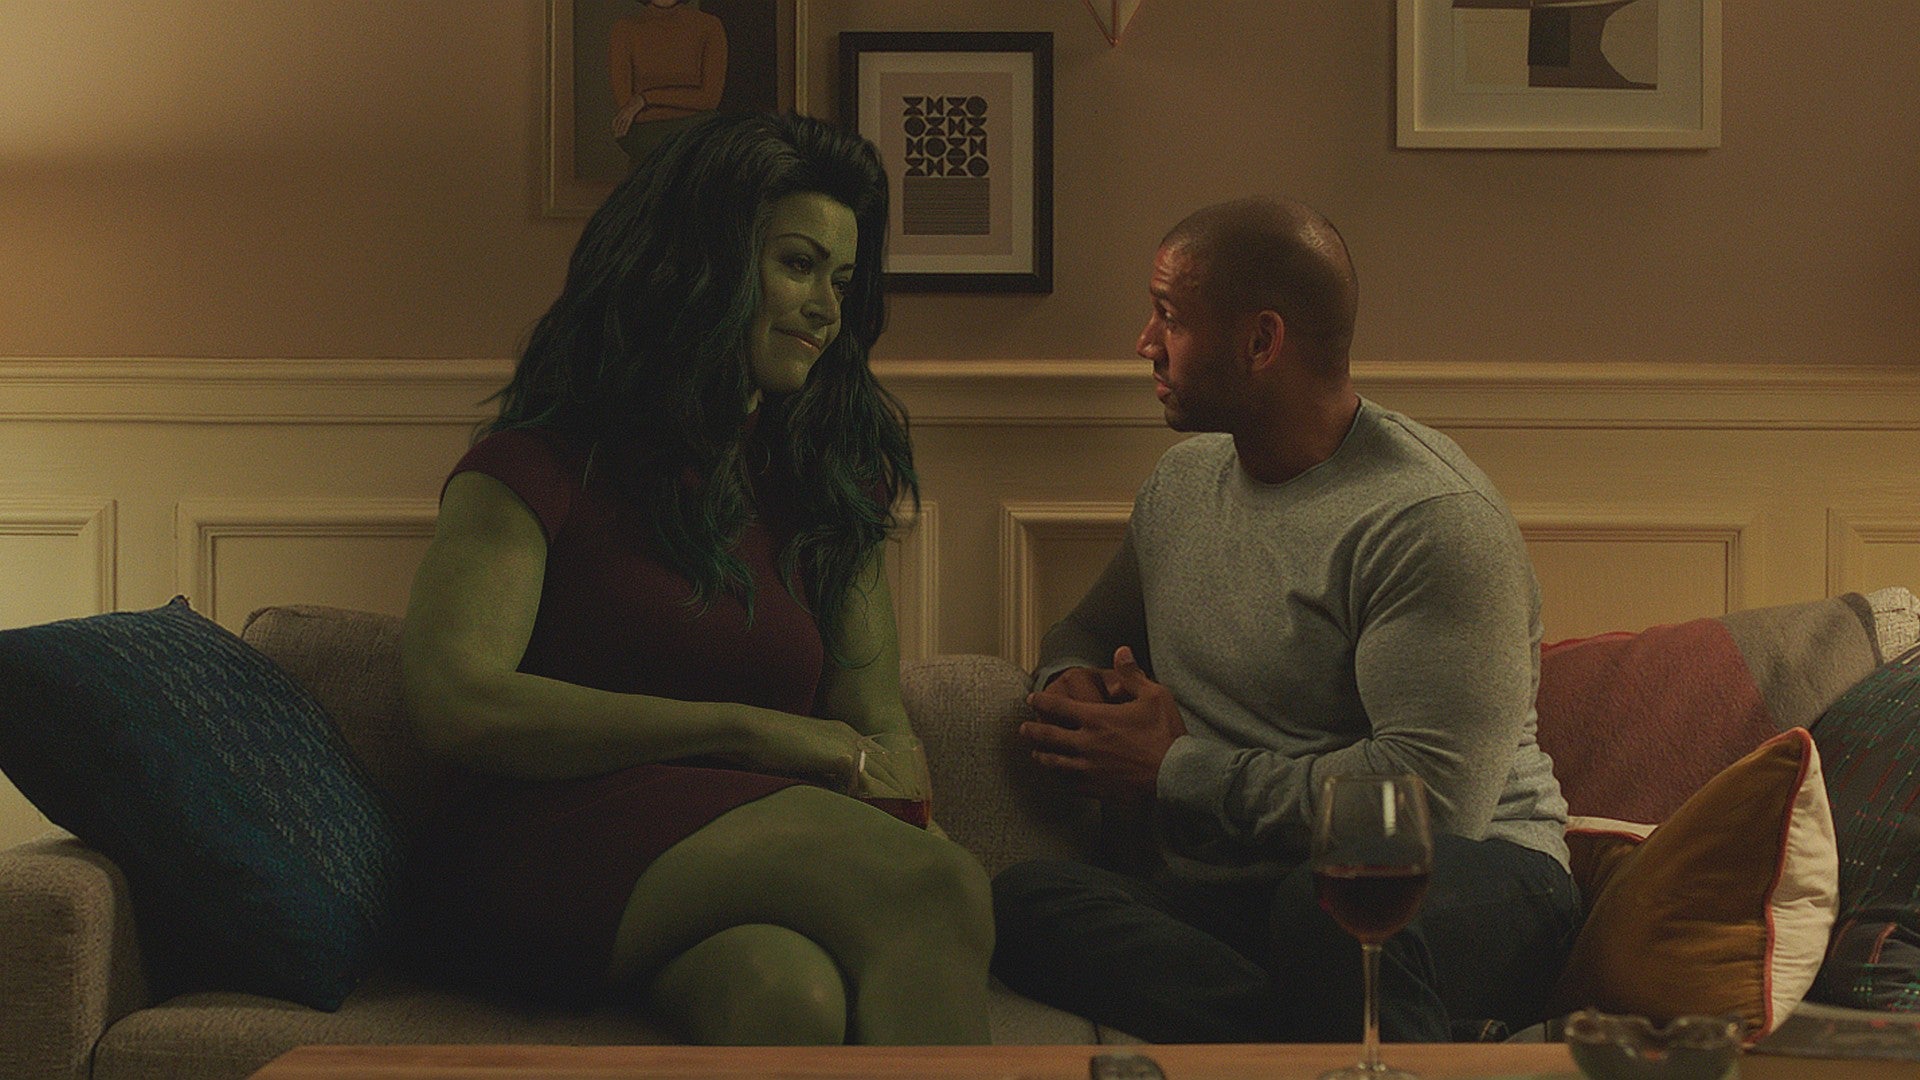 Bilder zu She-Hulk hatte gerade seine erste schlechte Folge